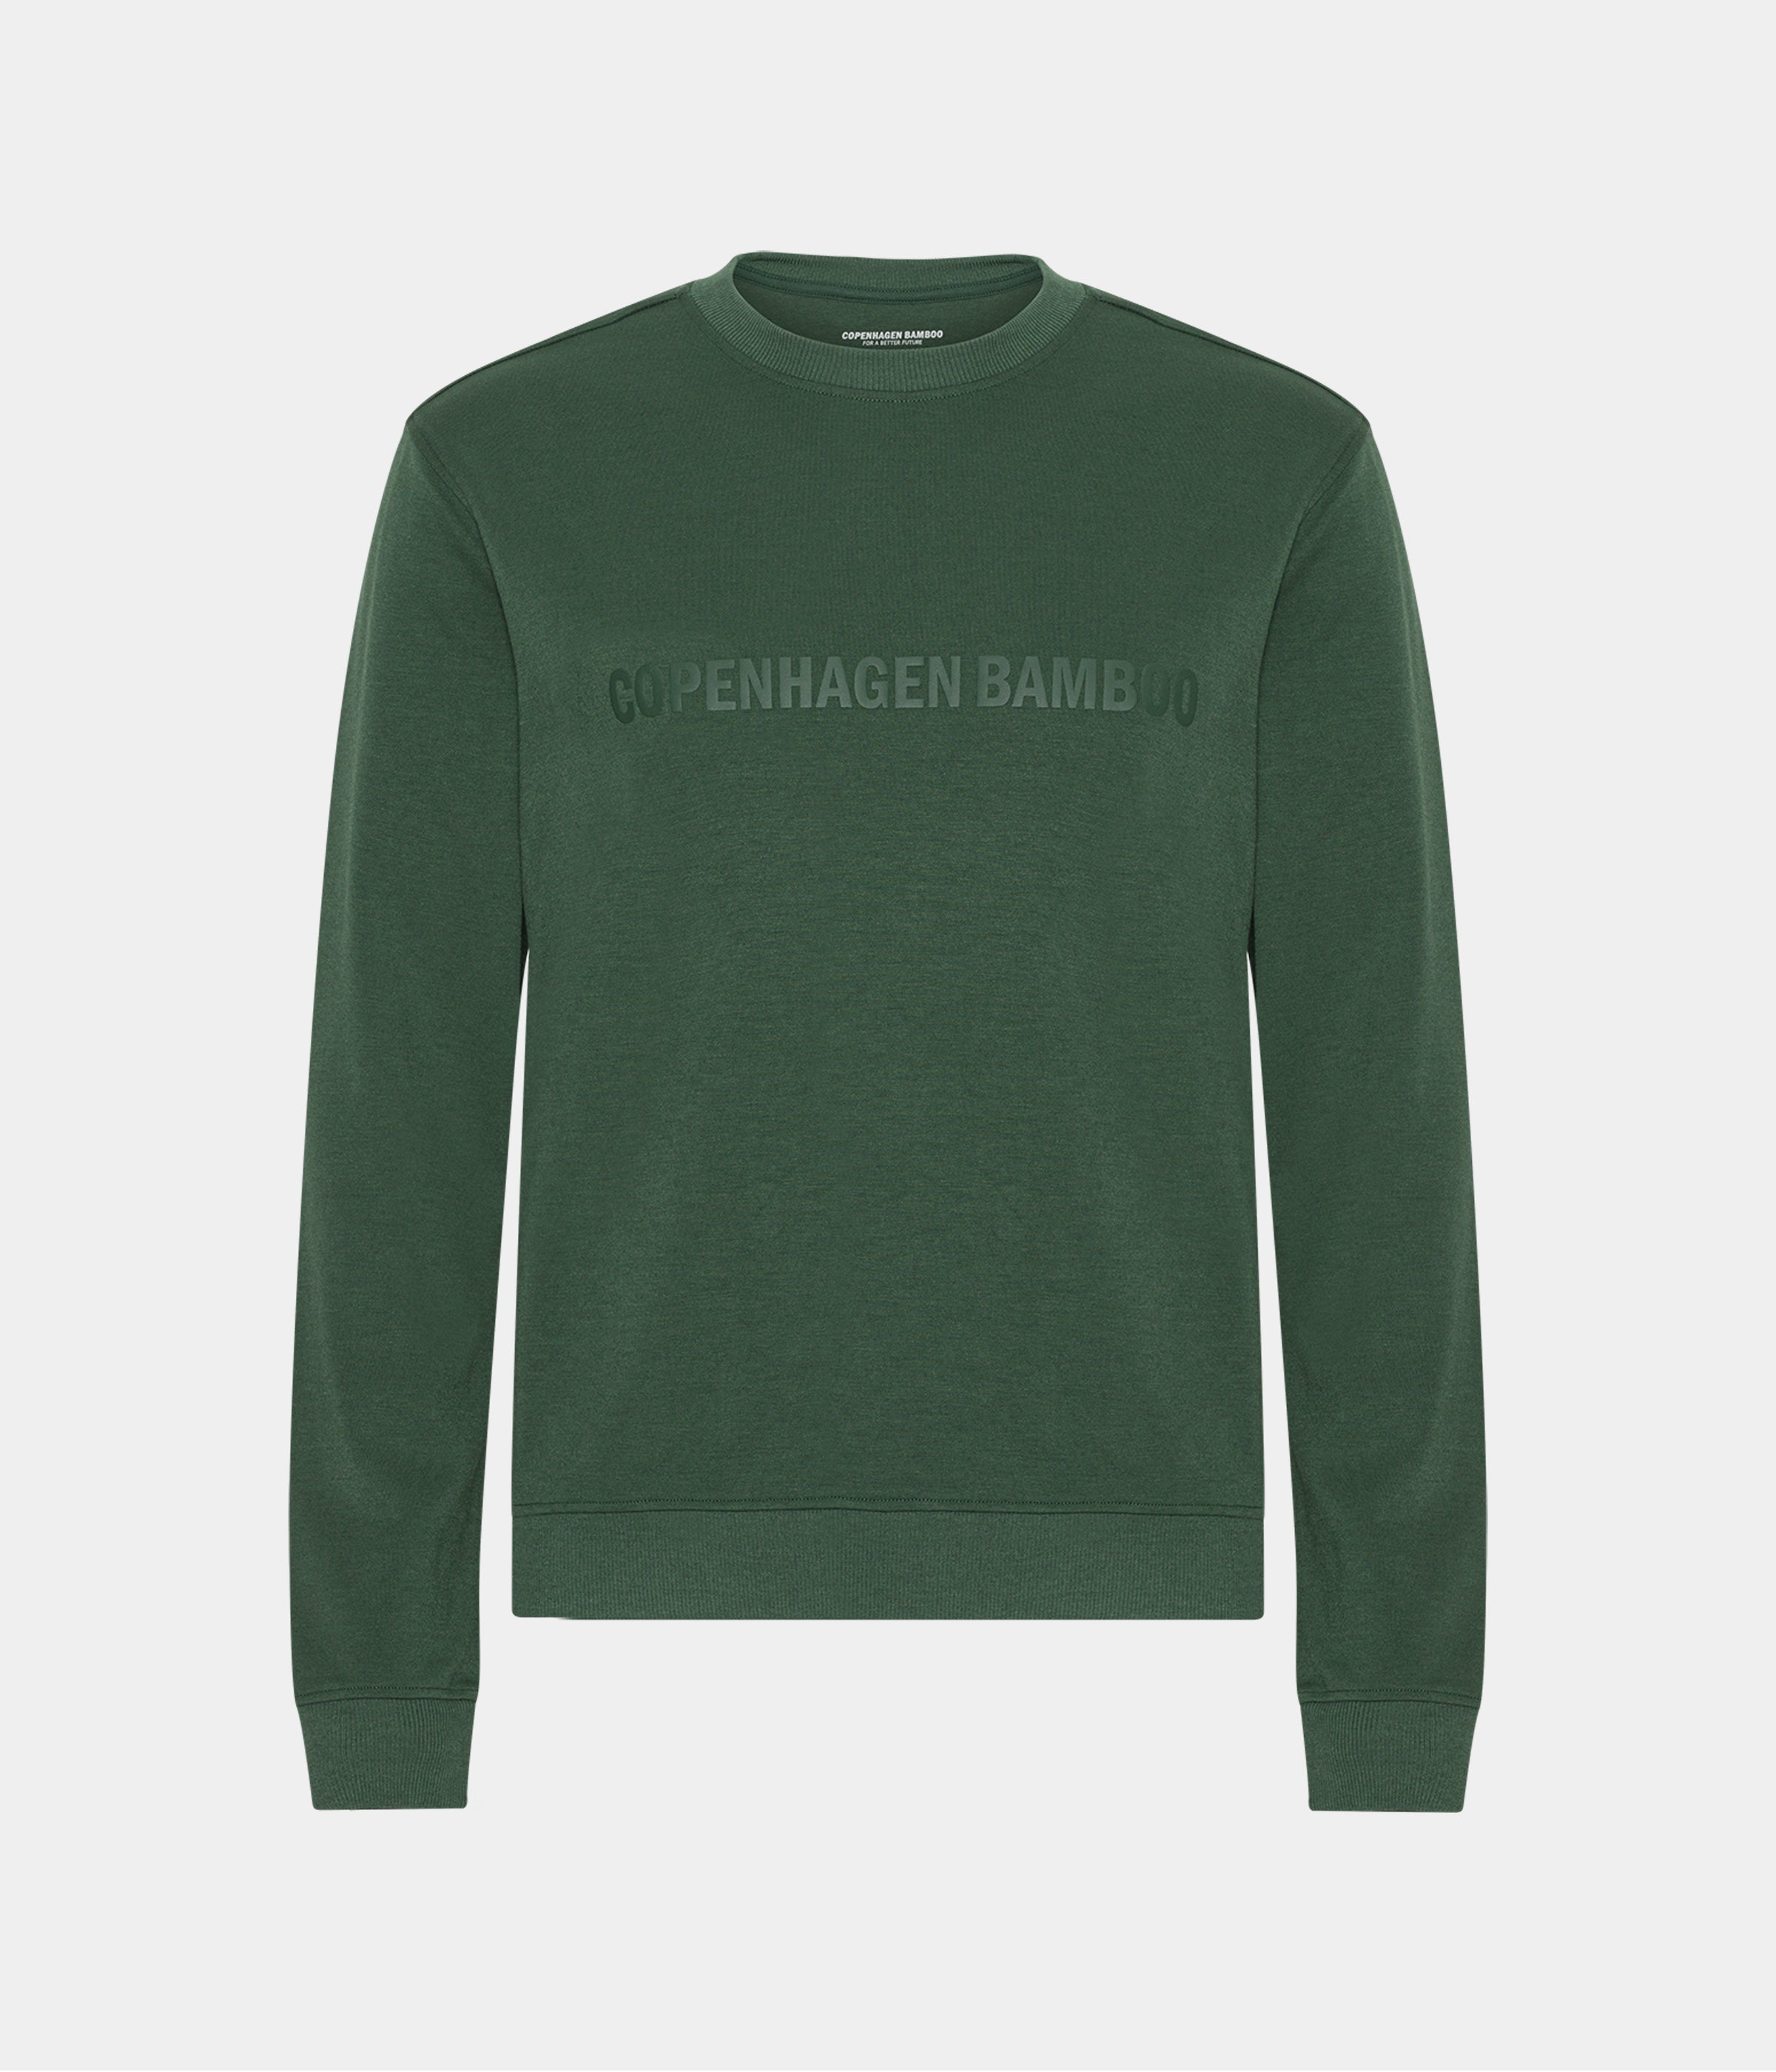 Grøn bambus sweatshirt til mænd med logo fra Copenhagen Bamboo, XS